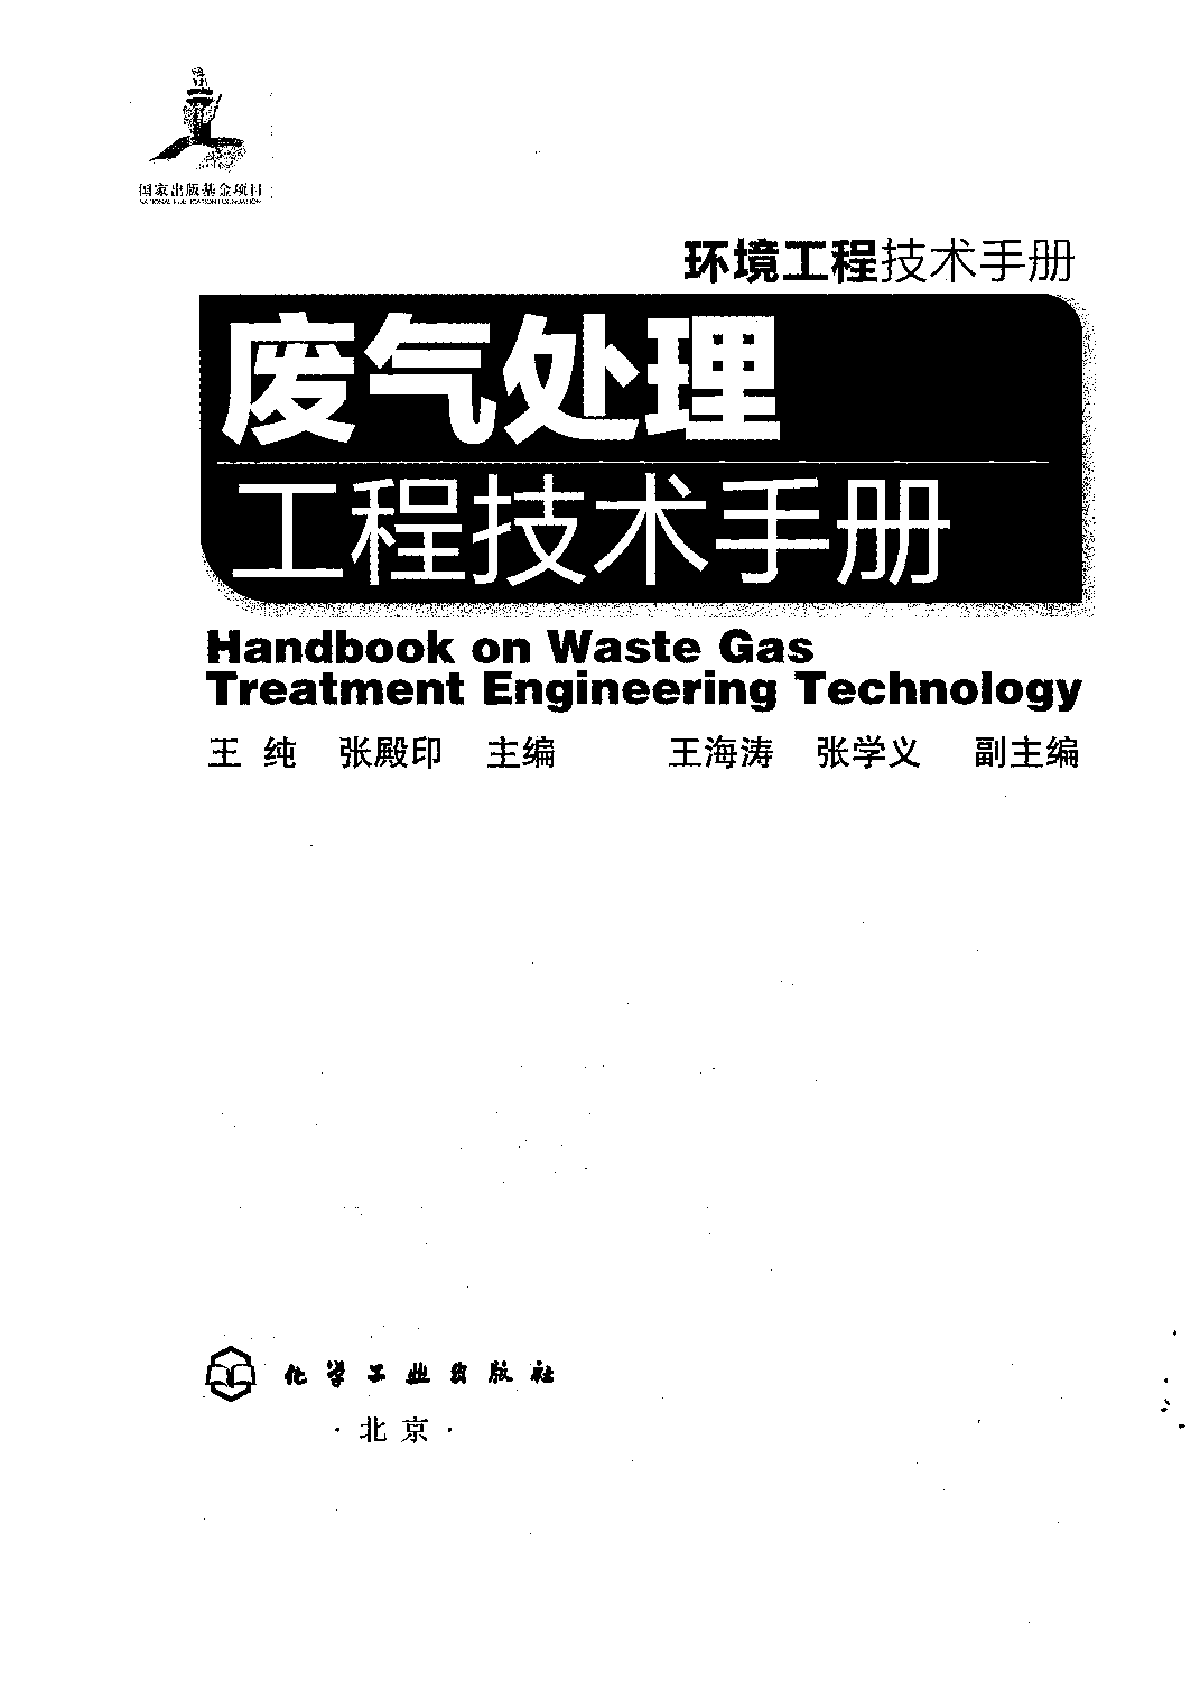 环境工程技术手册-废气处理工程技术手册-图一